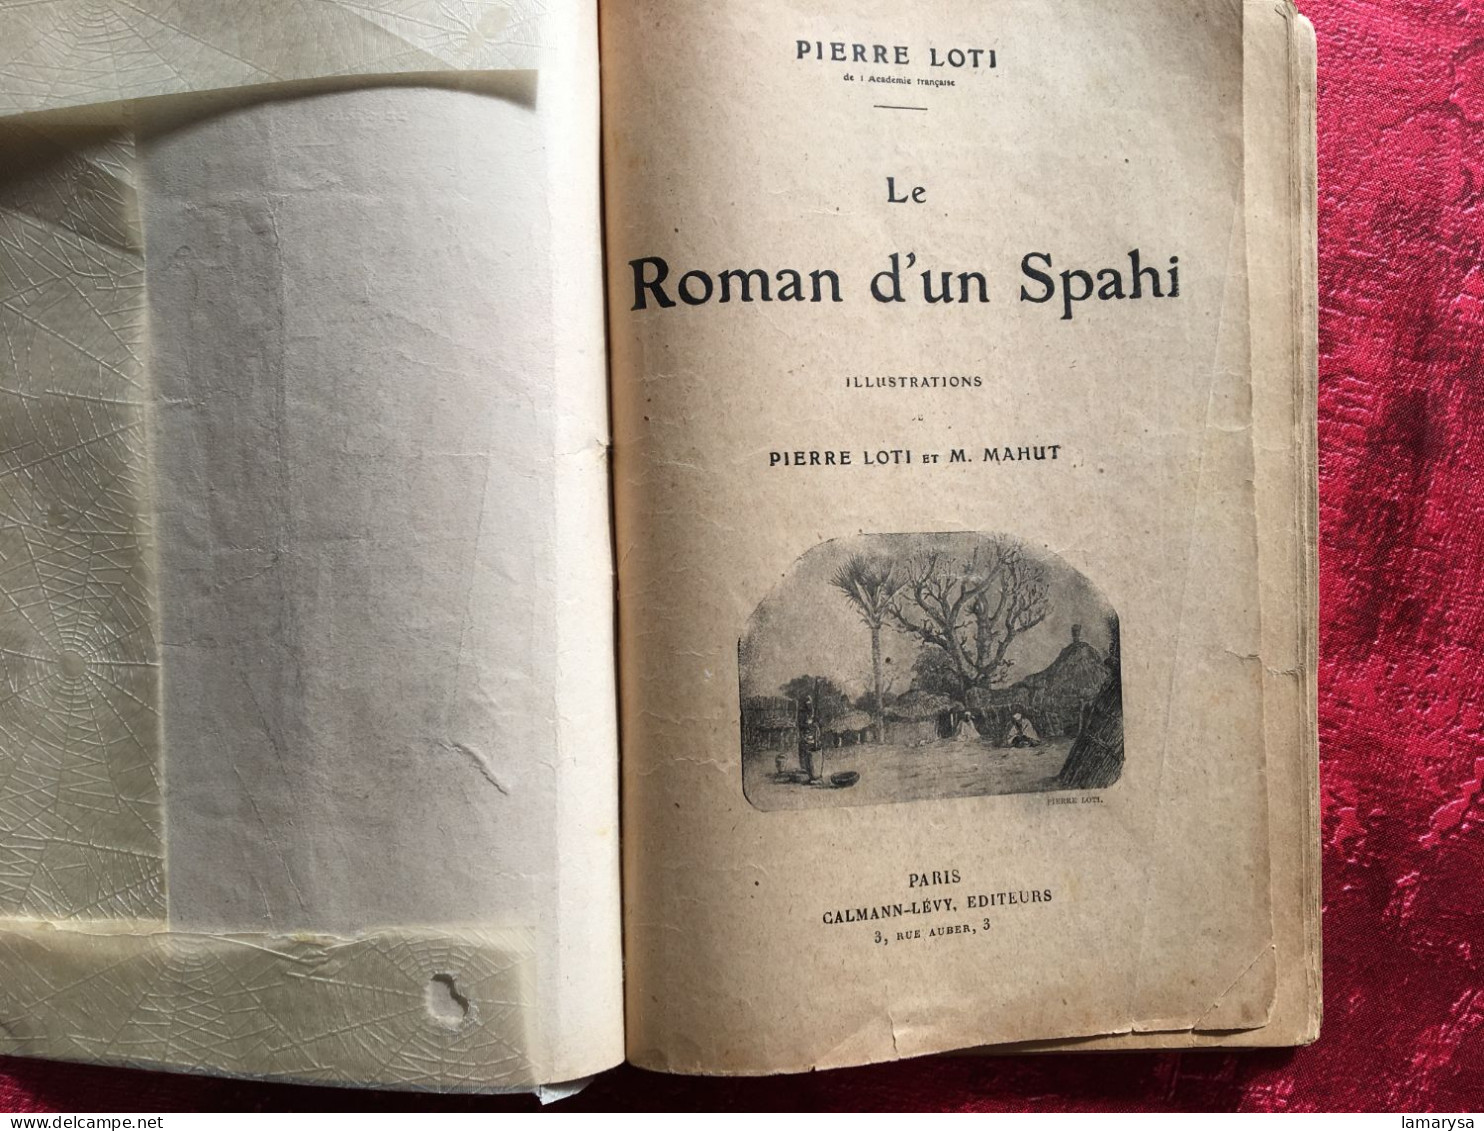 Le Roman D'un Spahi :Pierre Loti Livre Français Romans Aventures-illustrations Loti & M. Mahu,Calmann-Lévy, 1910 Paris, - Adventure